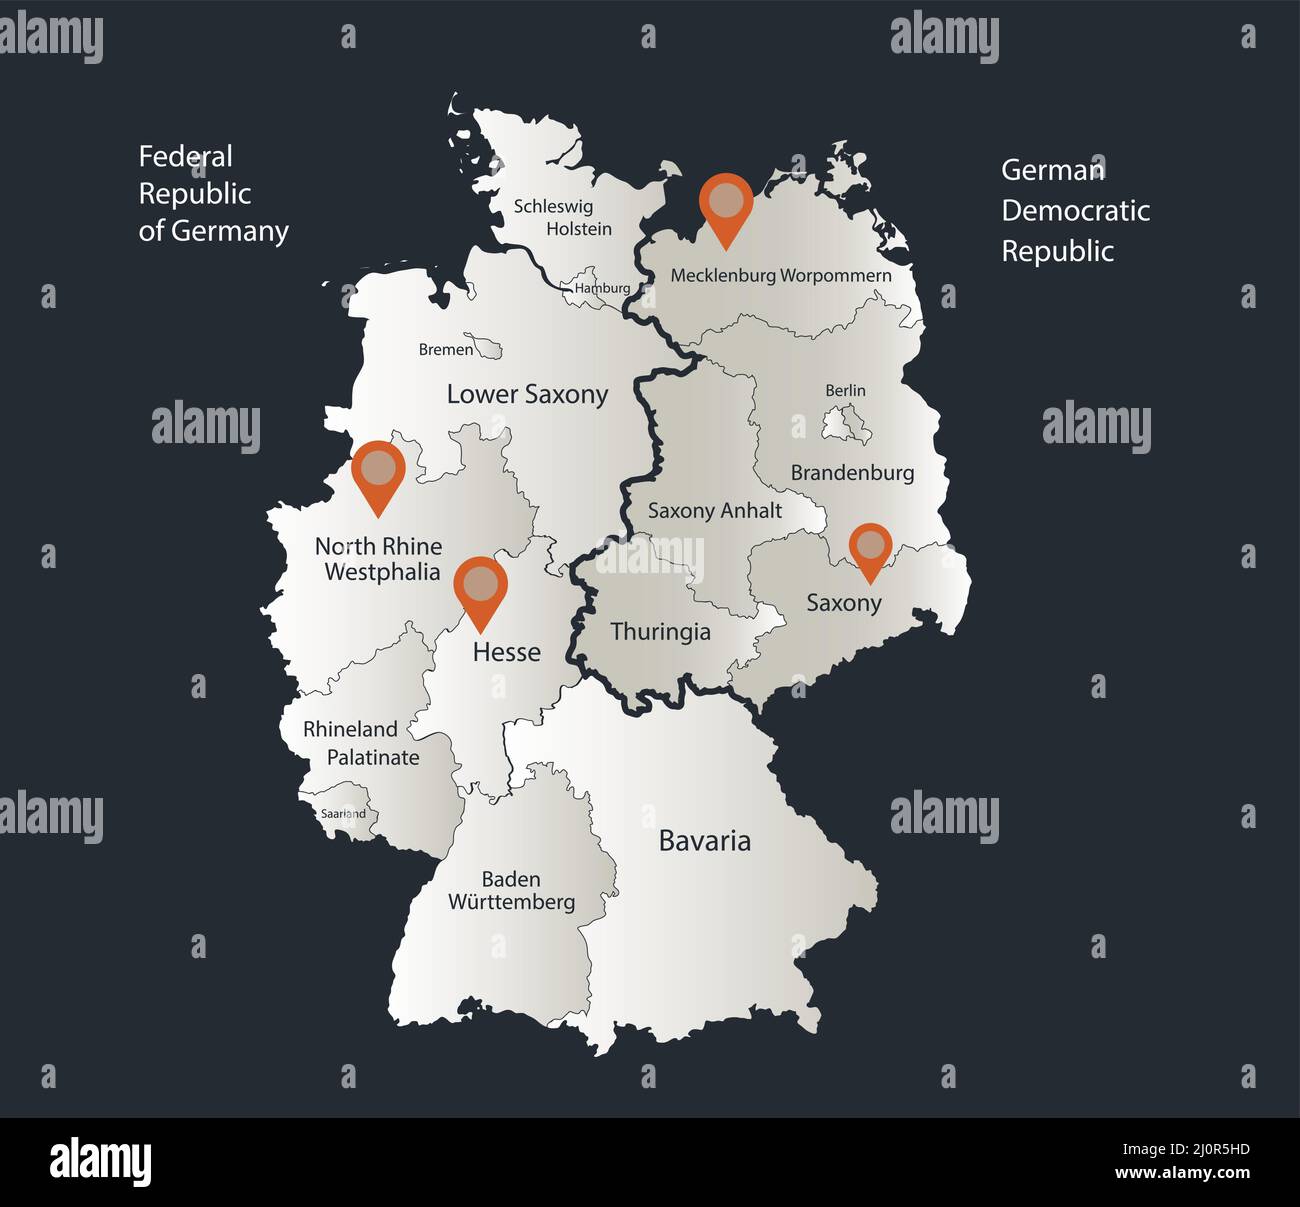 mapa-de-alemania-dividido-en-alemania-occidental-y-oriental